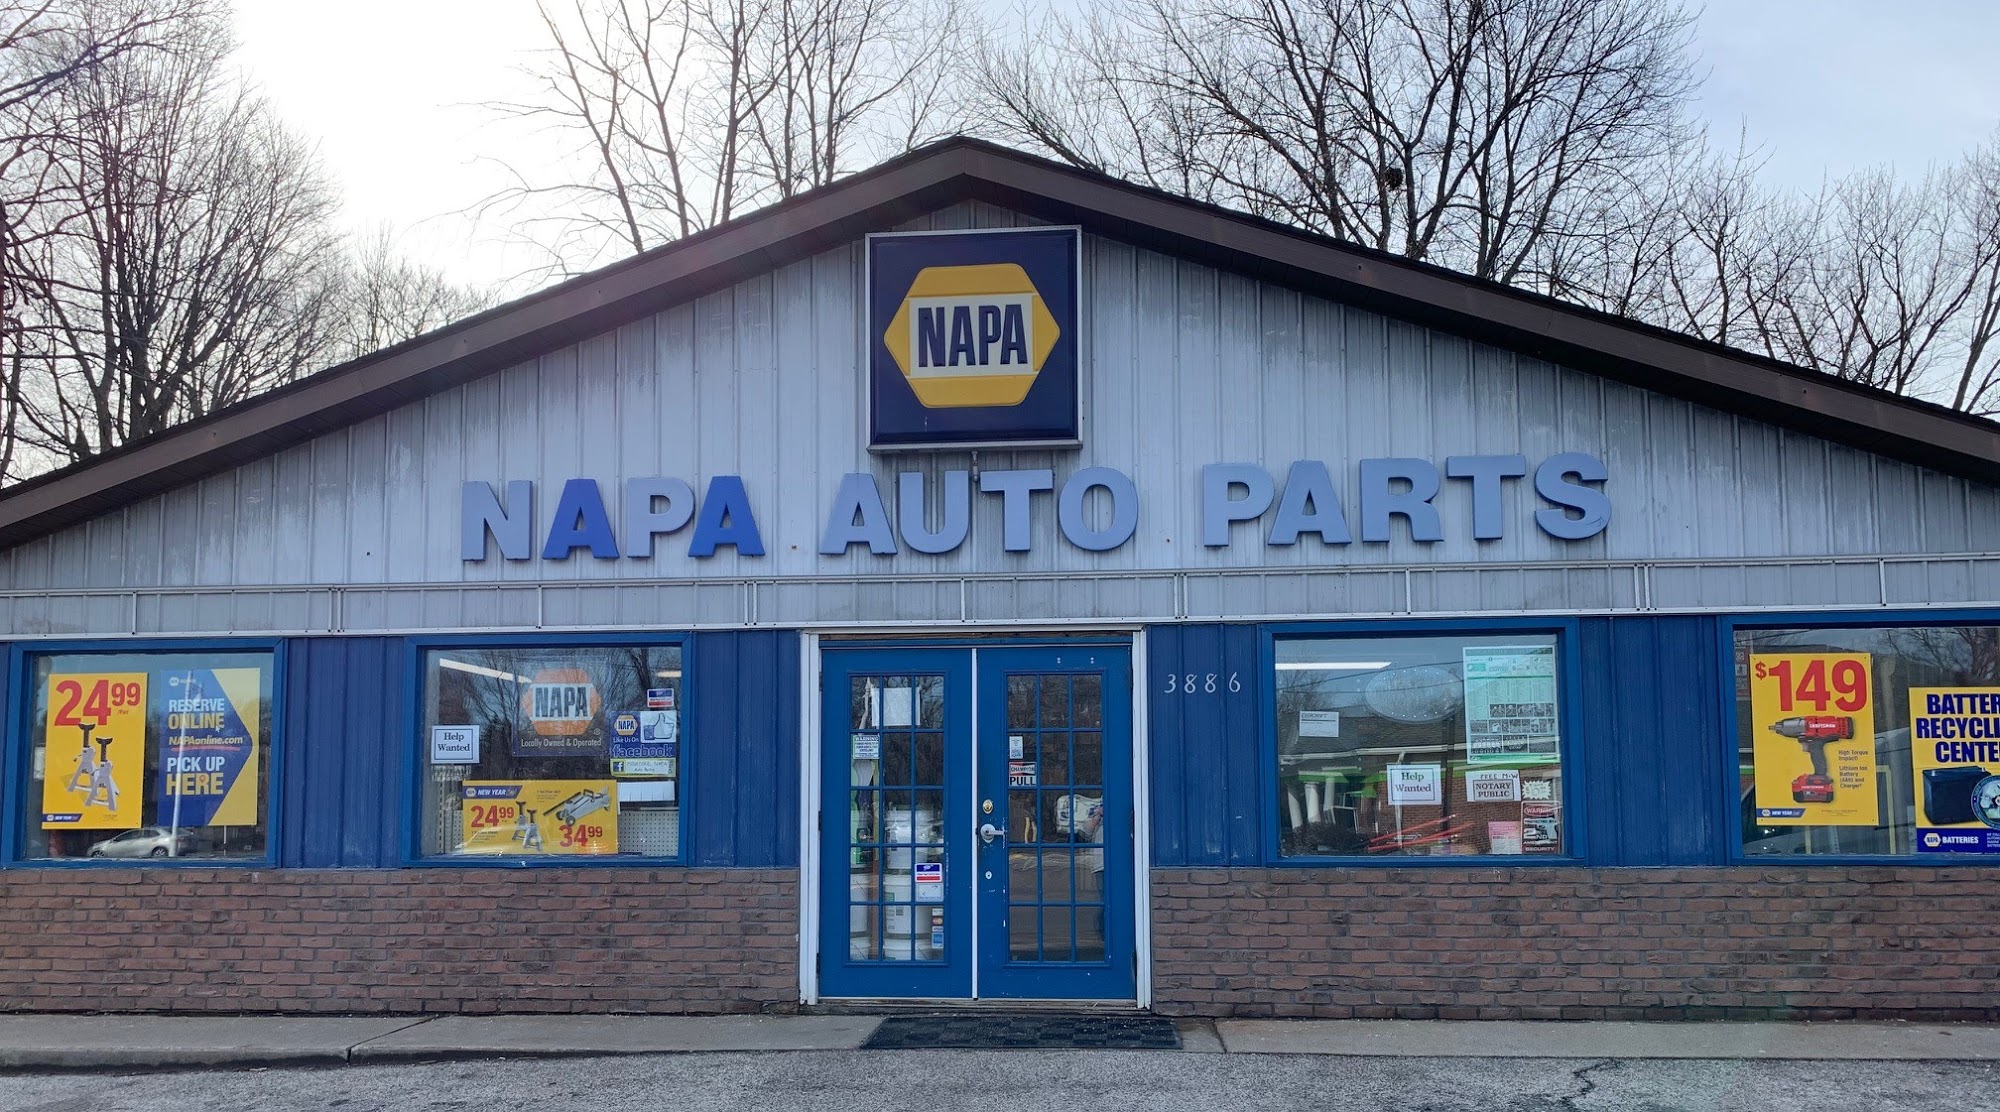 NAPA Auto Parts - Mogadore Auto Parts Co